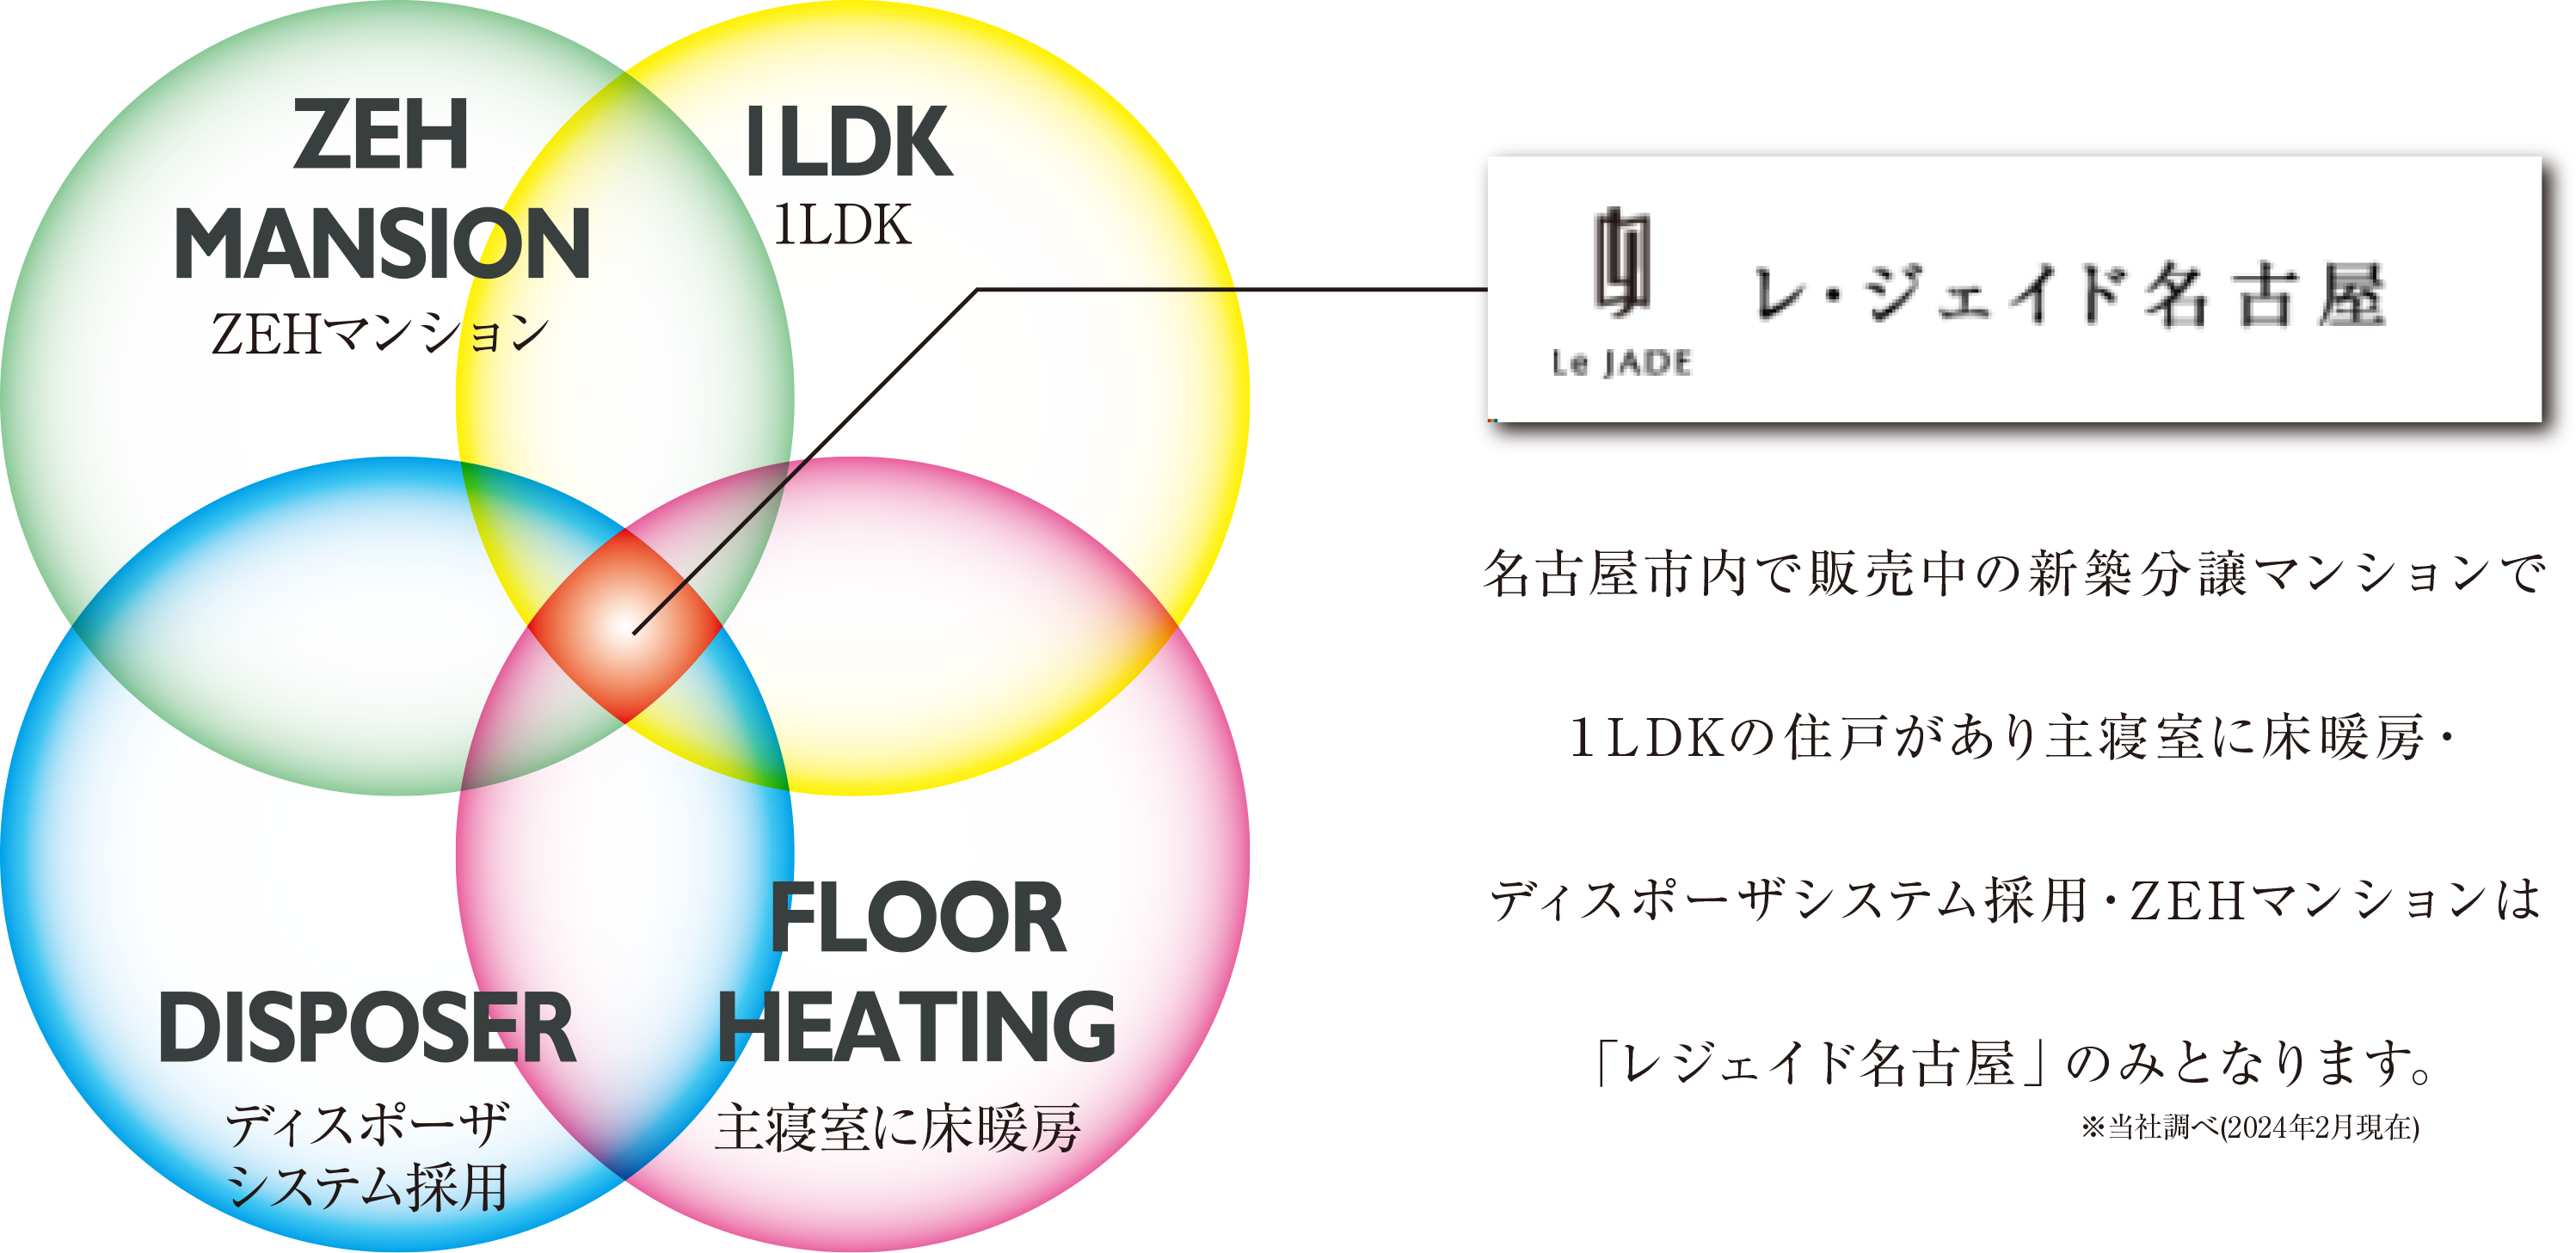 名古屋市内で販売中の新築分譲マンションで１LDKの住戸があり床暖房・ディスポーザシステム採用・ZEHマンションは「レジェイド名古屋」のみとなります。※当社調べ(2024年2月現在)